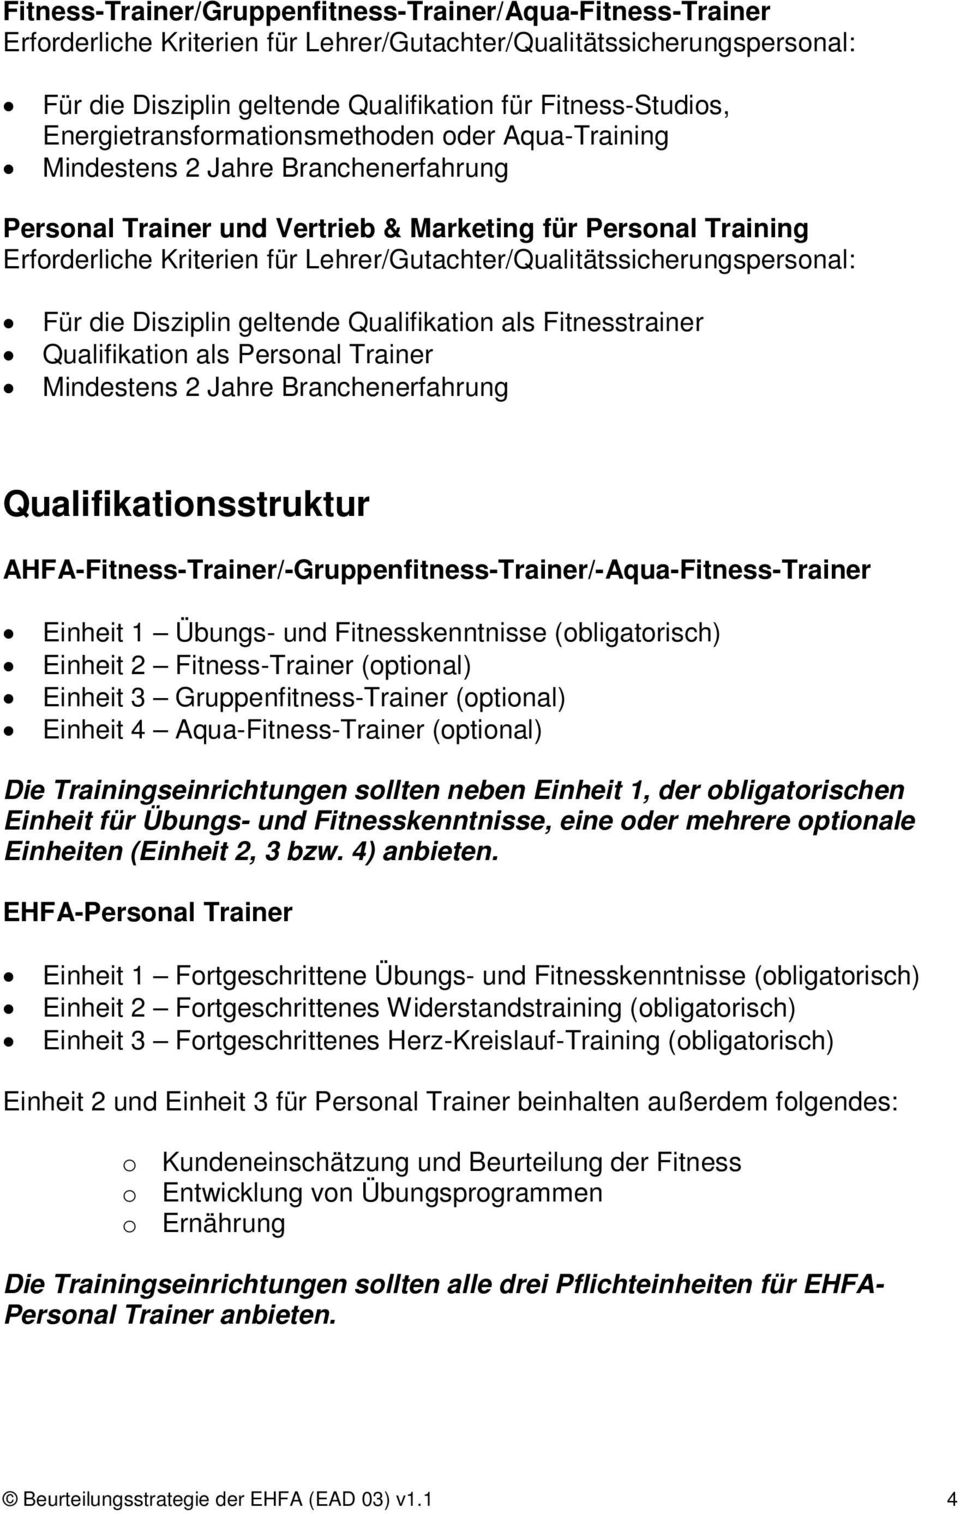 Lehrer/Gutachter/Qualitätssicherungspersonal: Für die Disziplin geltende Qualifikation als Fitnesstrainer Qualifikation als Personal Trainer Mindestens 2 Jahre Branchenerfahrung